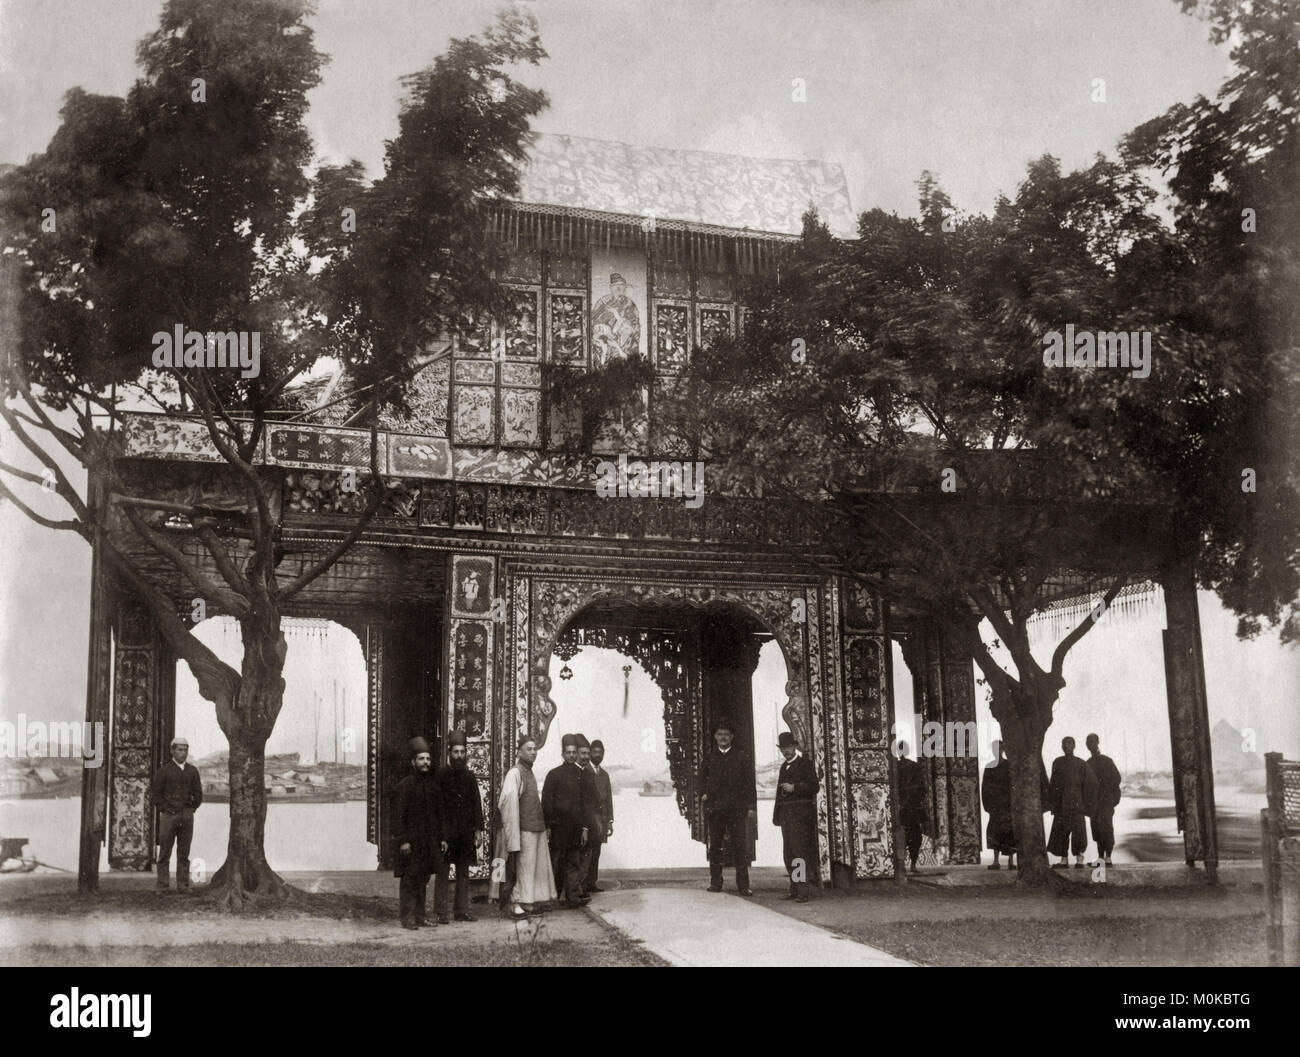 Arche de cérémonie, Canton, Chine, c.1890's Banque D'Images